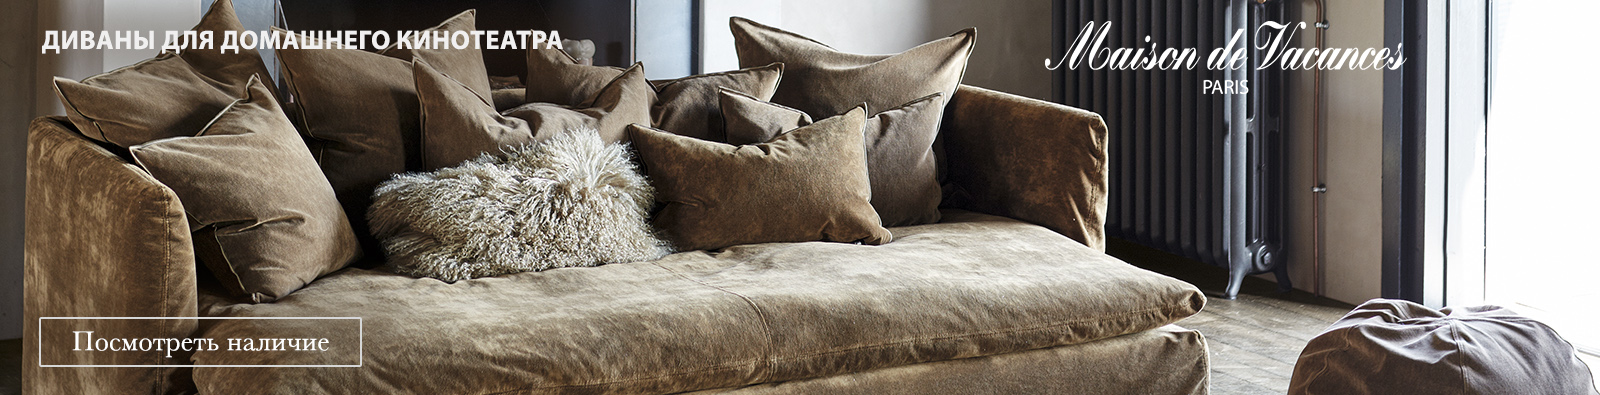 Роскошный коричневый бархатный диван с множеством плюшевых подушек Maison De Vacances Playground, идеально подходящий для домашнего кинотеатра